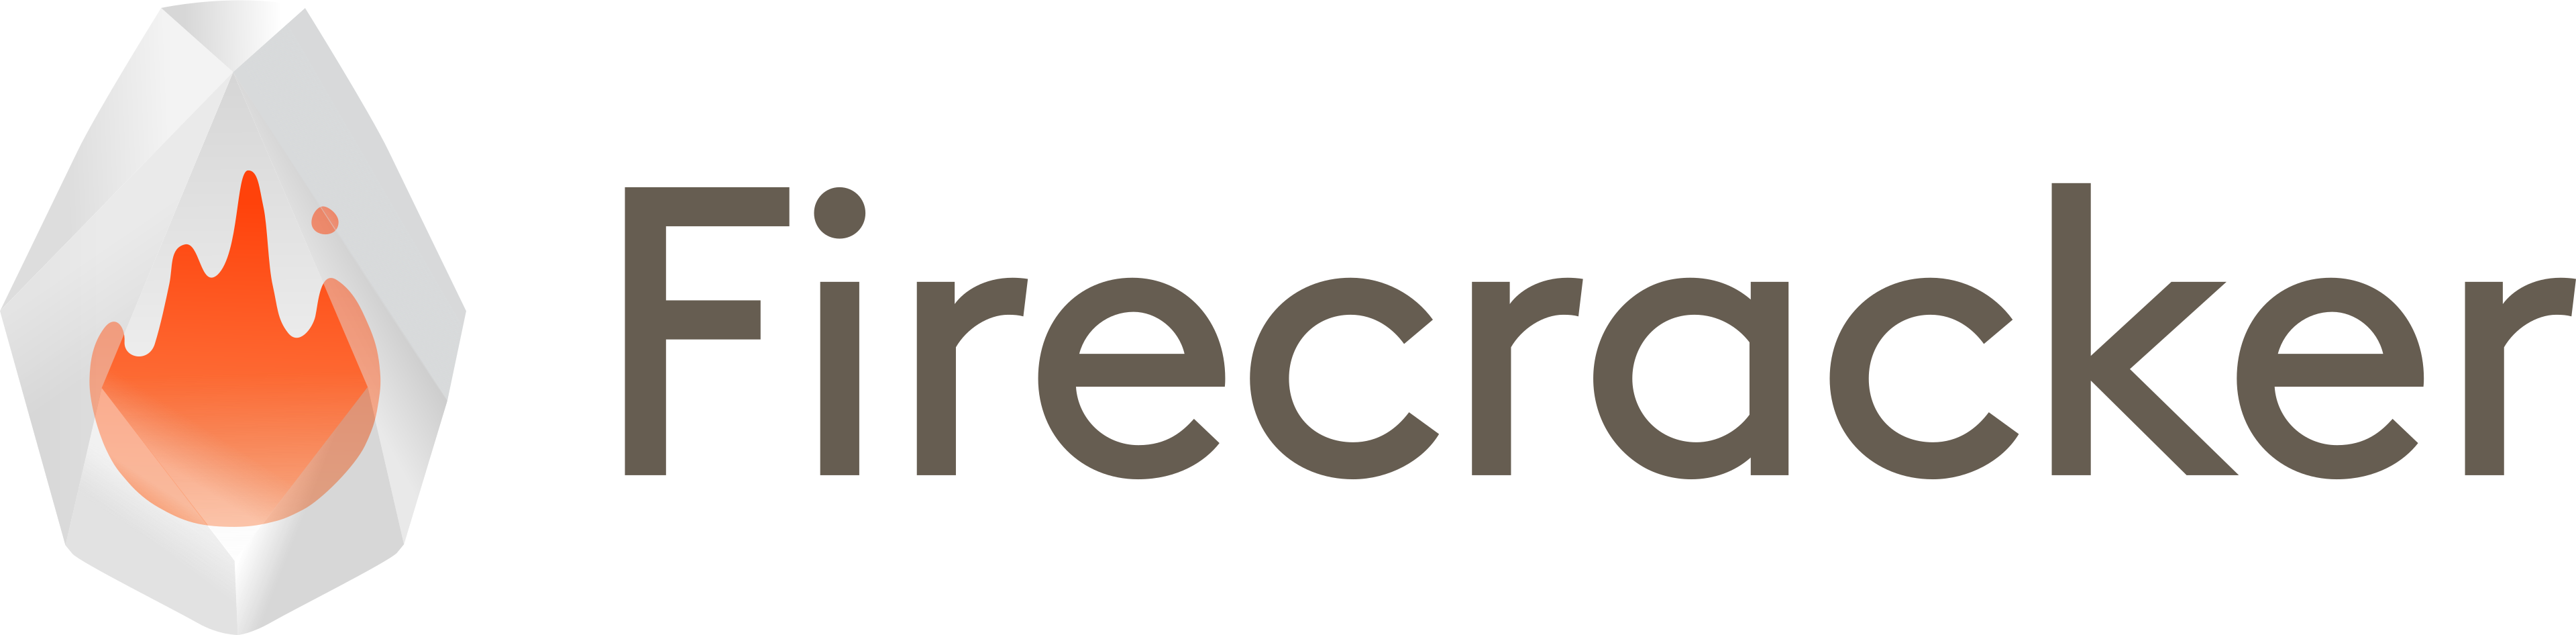 Firecracker Logo Title